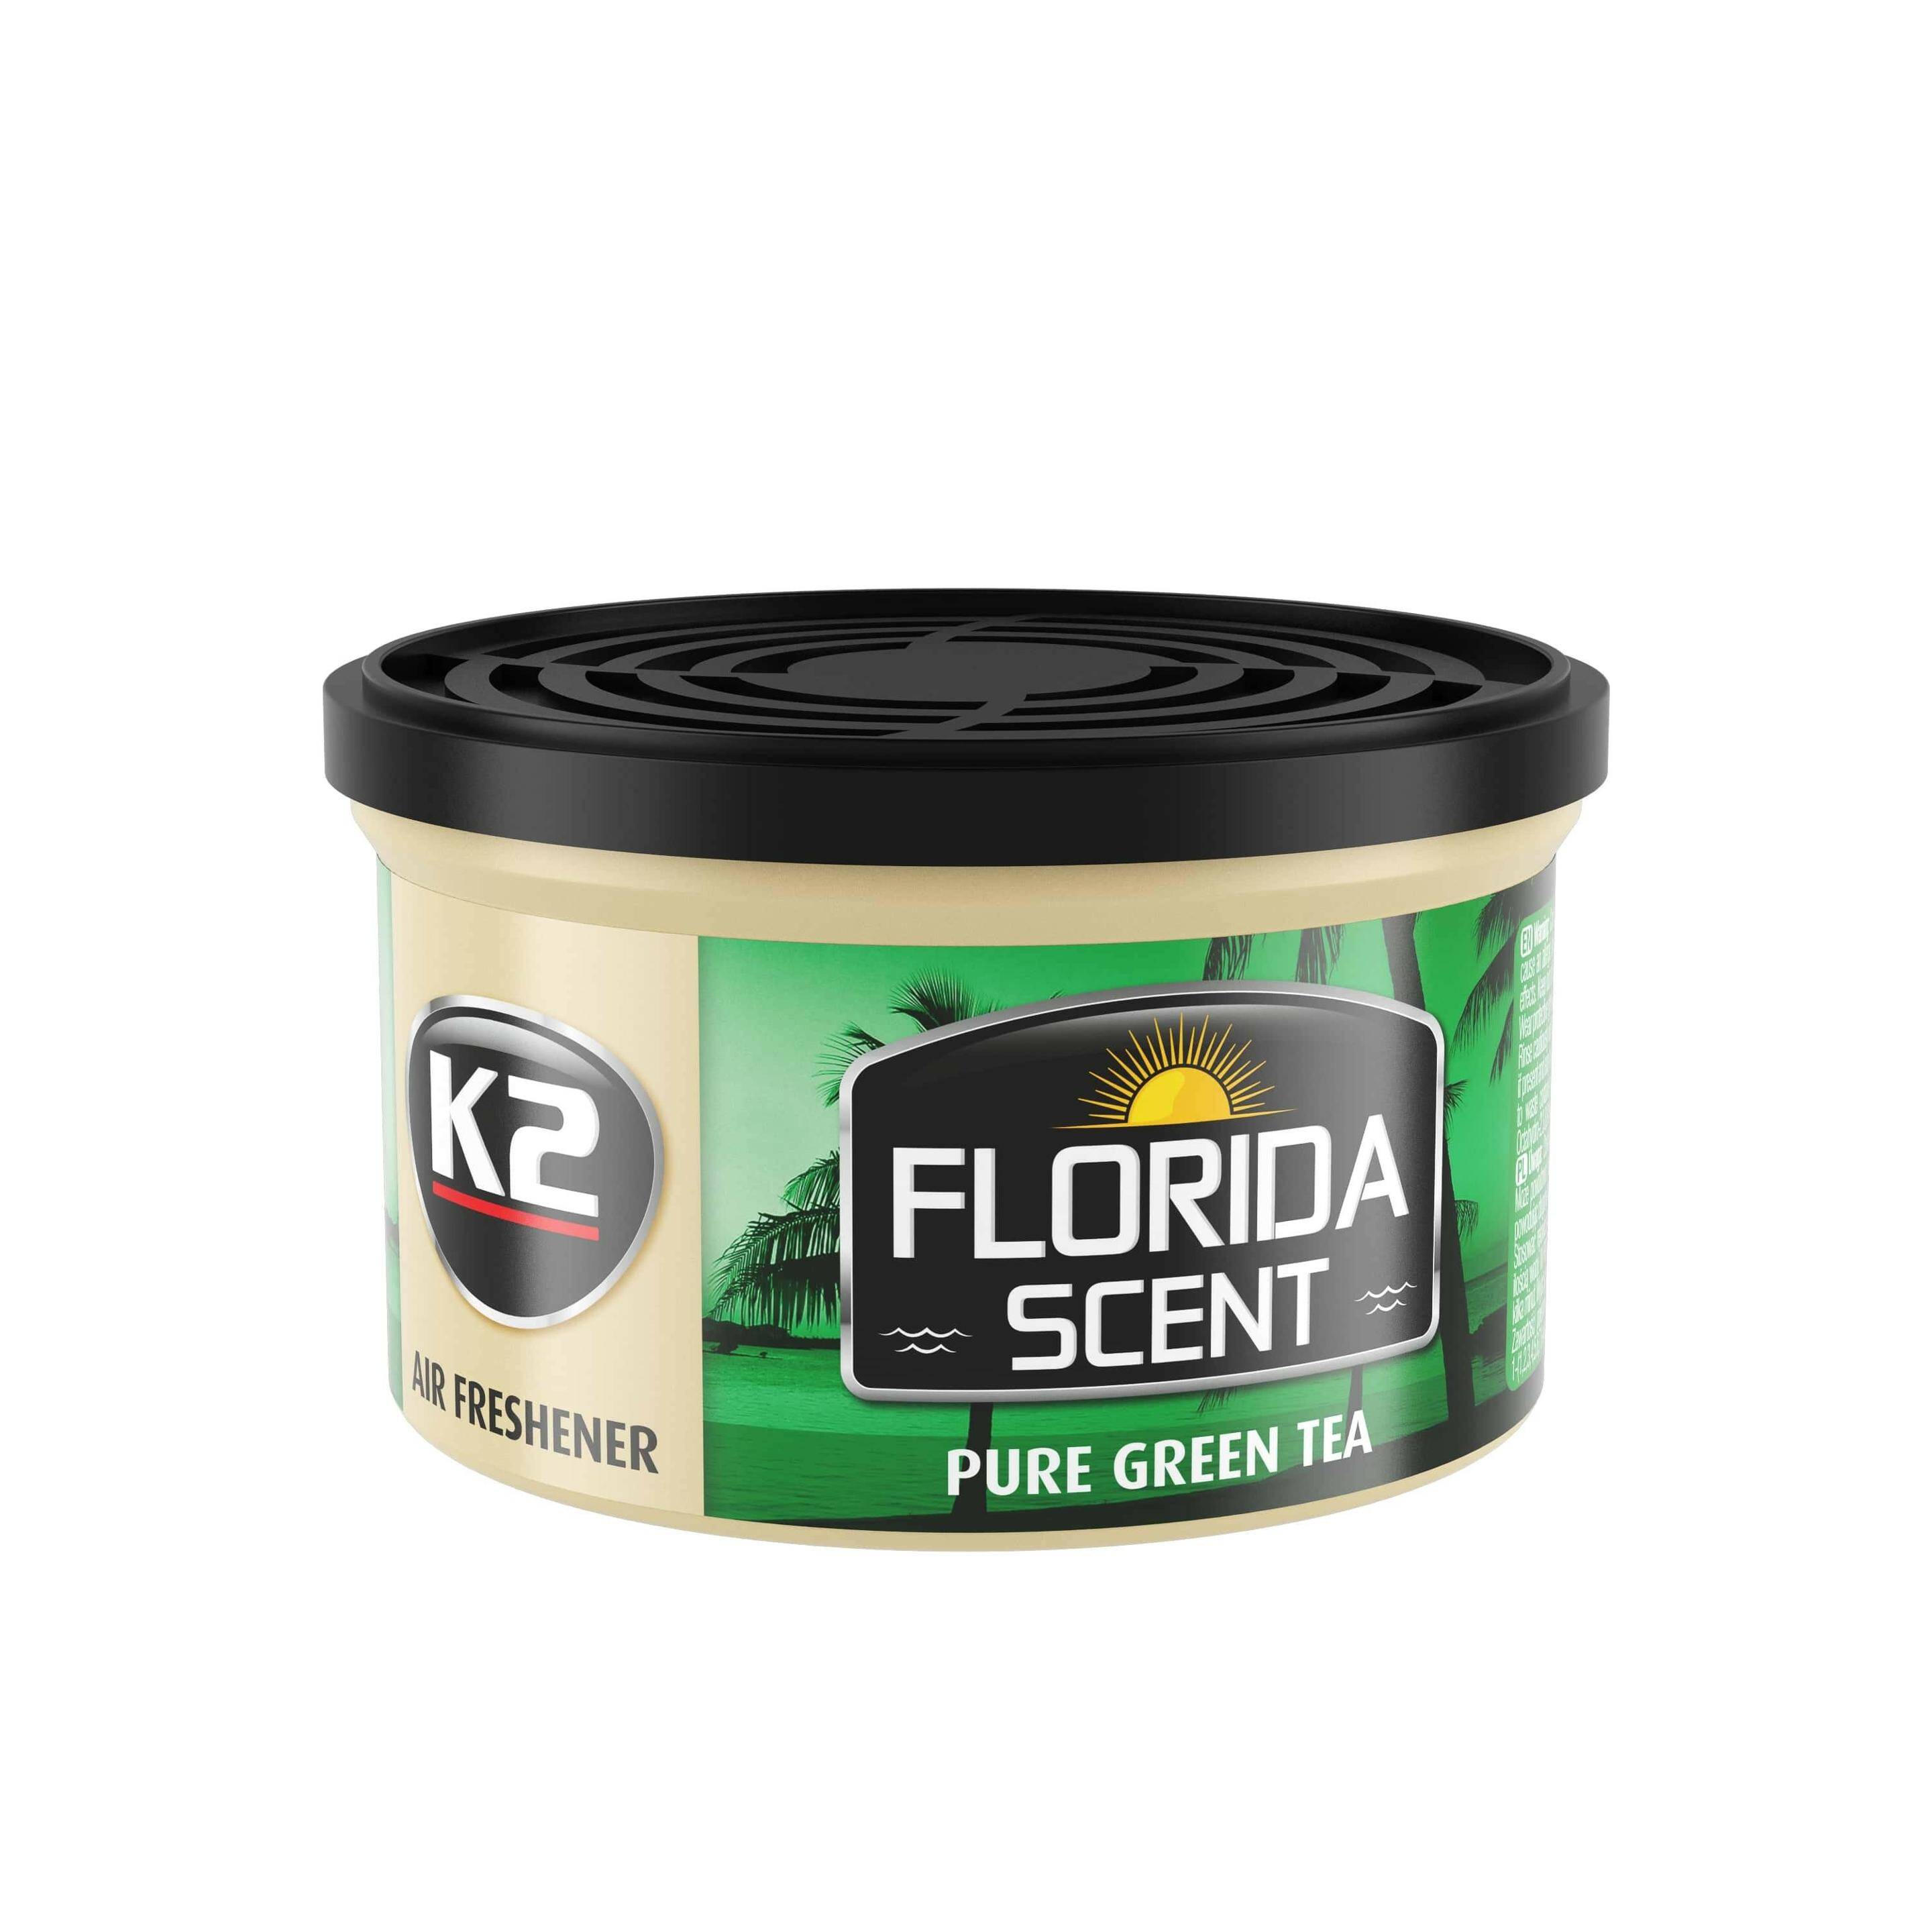 K2 FLORIDA SCENT PURE GREEN TEA